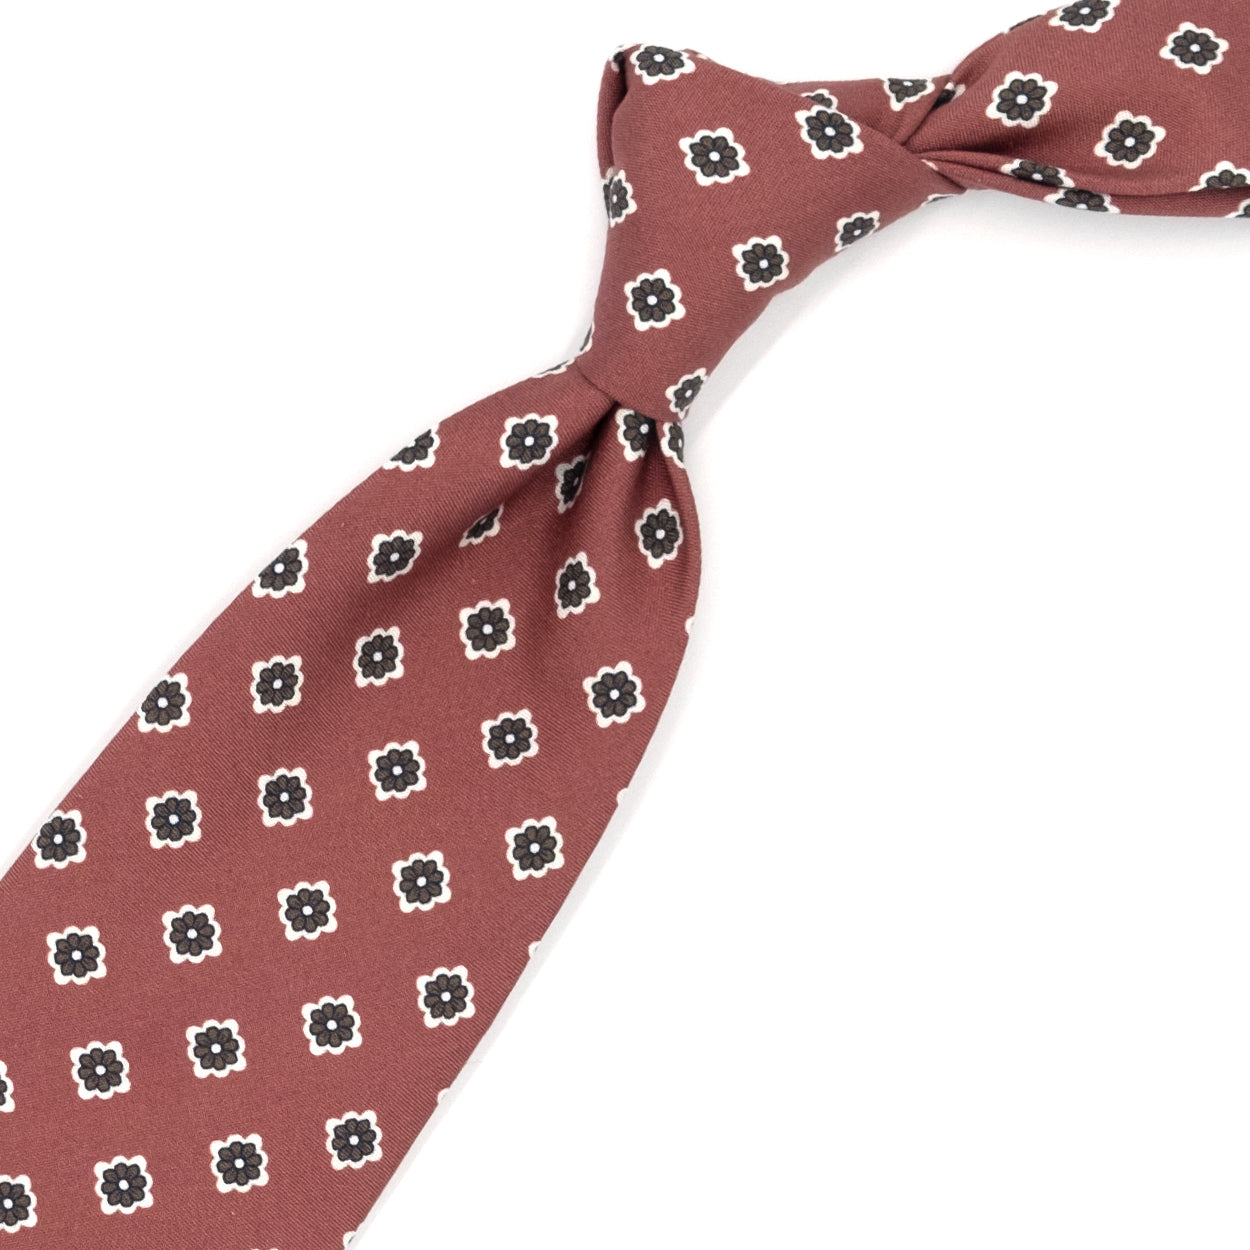 Cravatta rosa antico con fiori marroni